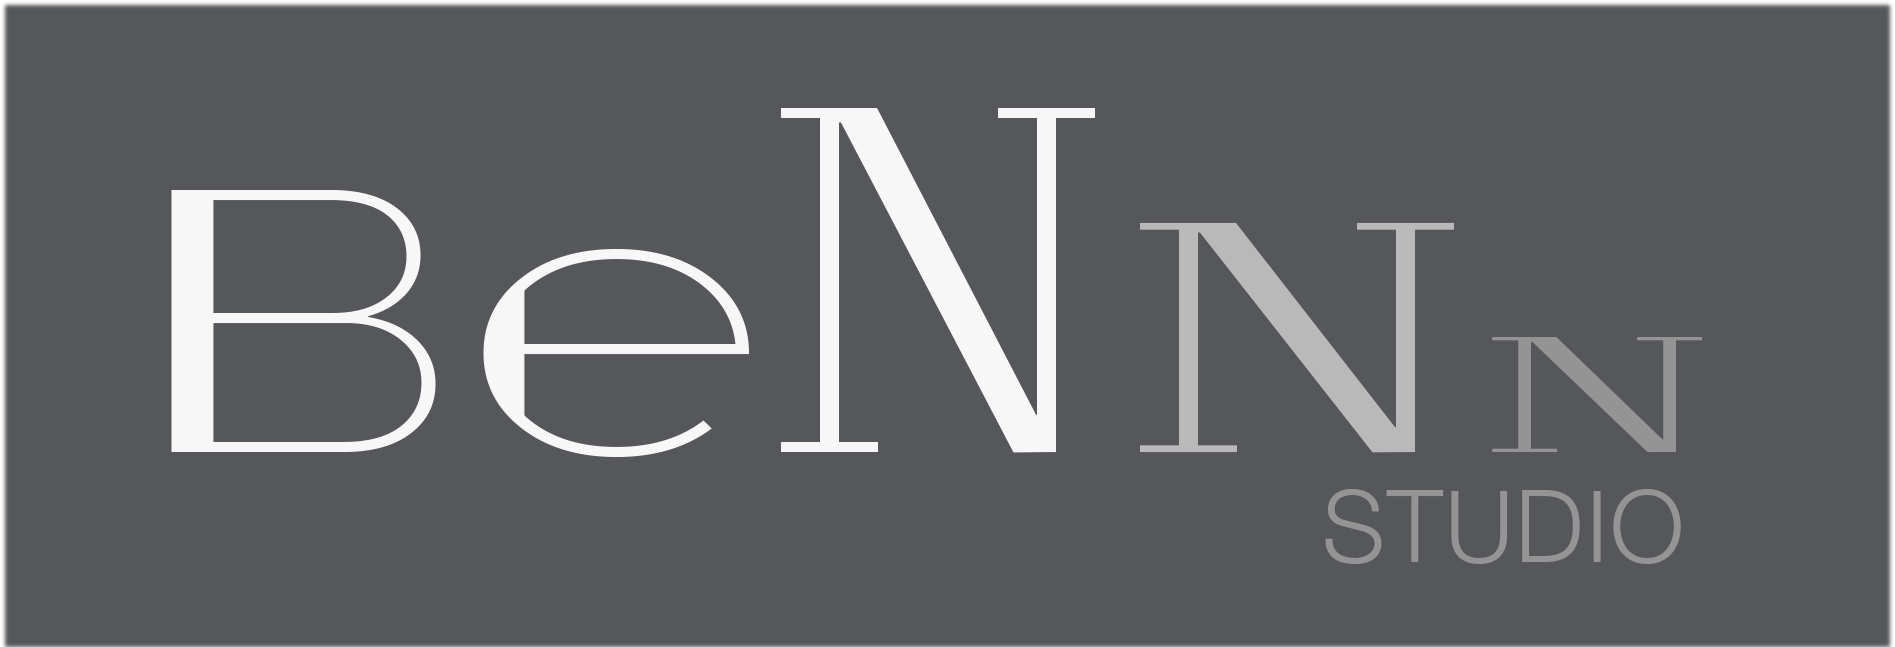 Уникальный логотип BeNNN-Studio